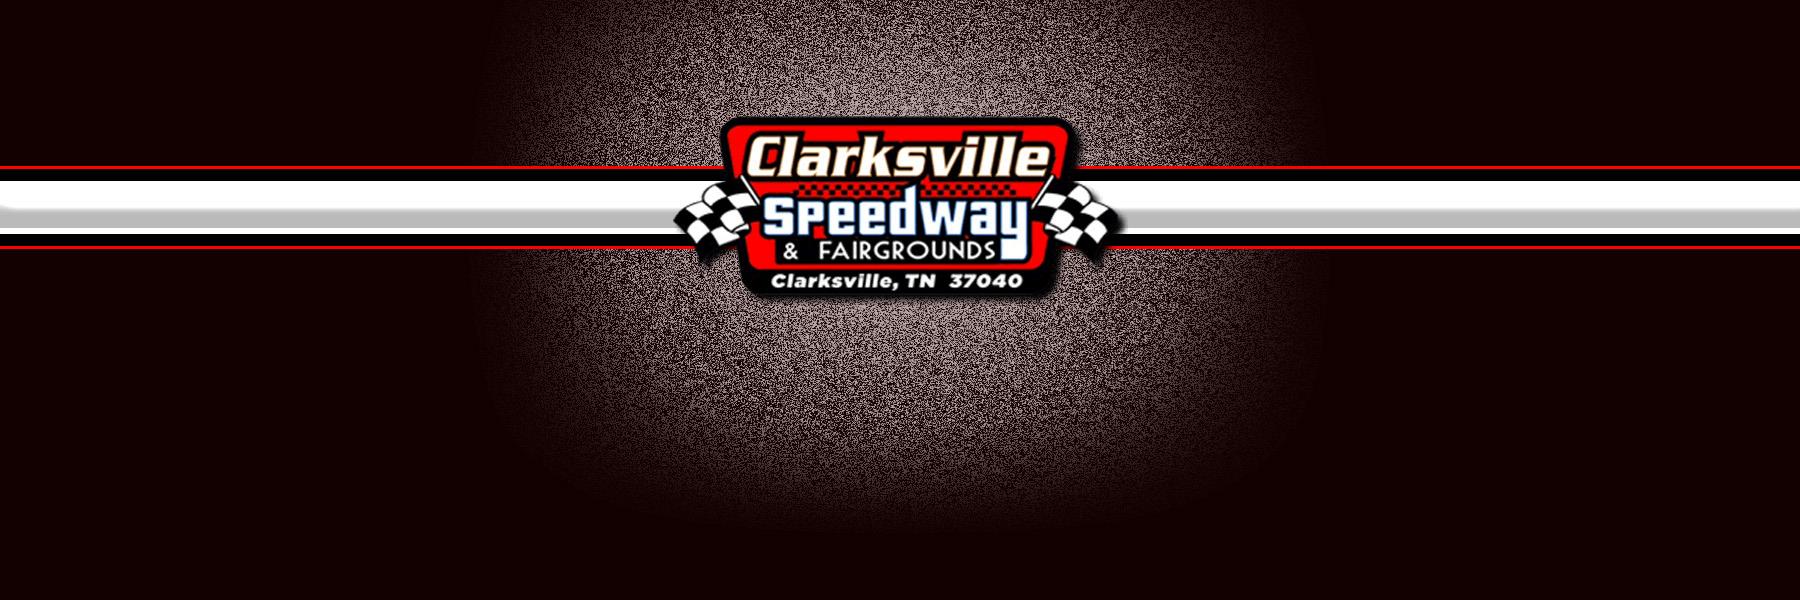 7/2/2022 - Clarksville Speedway